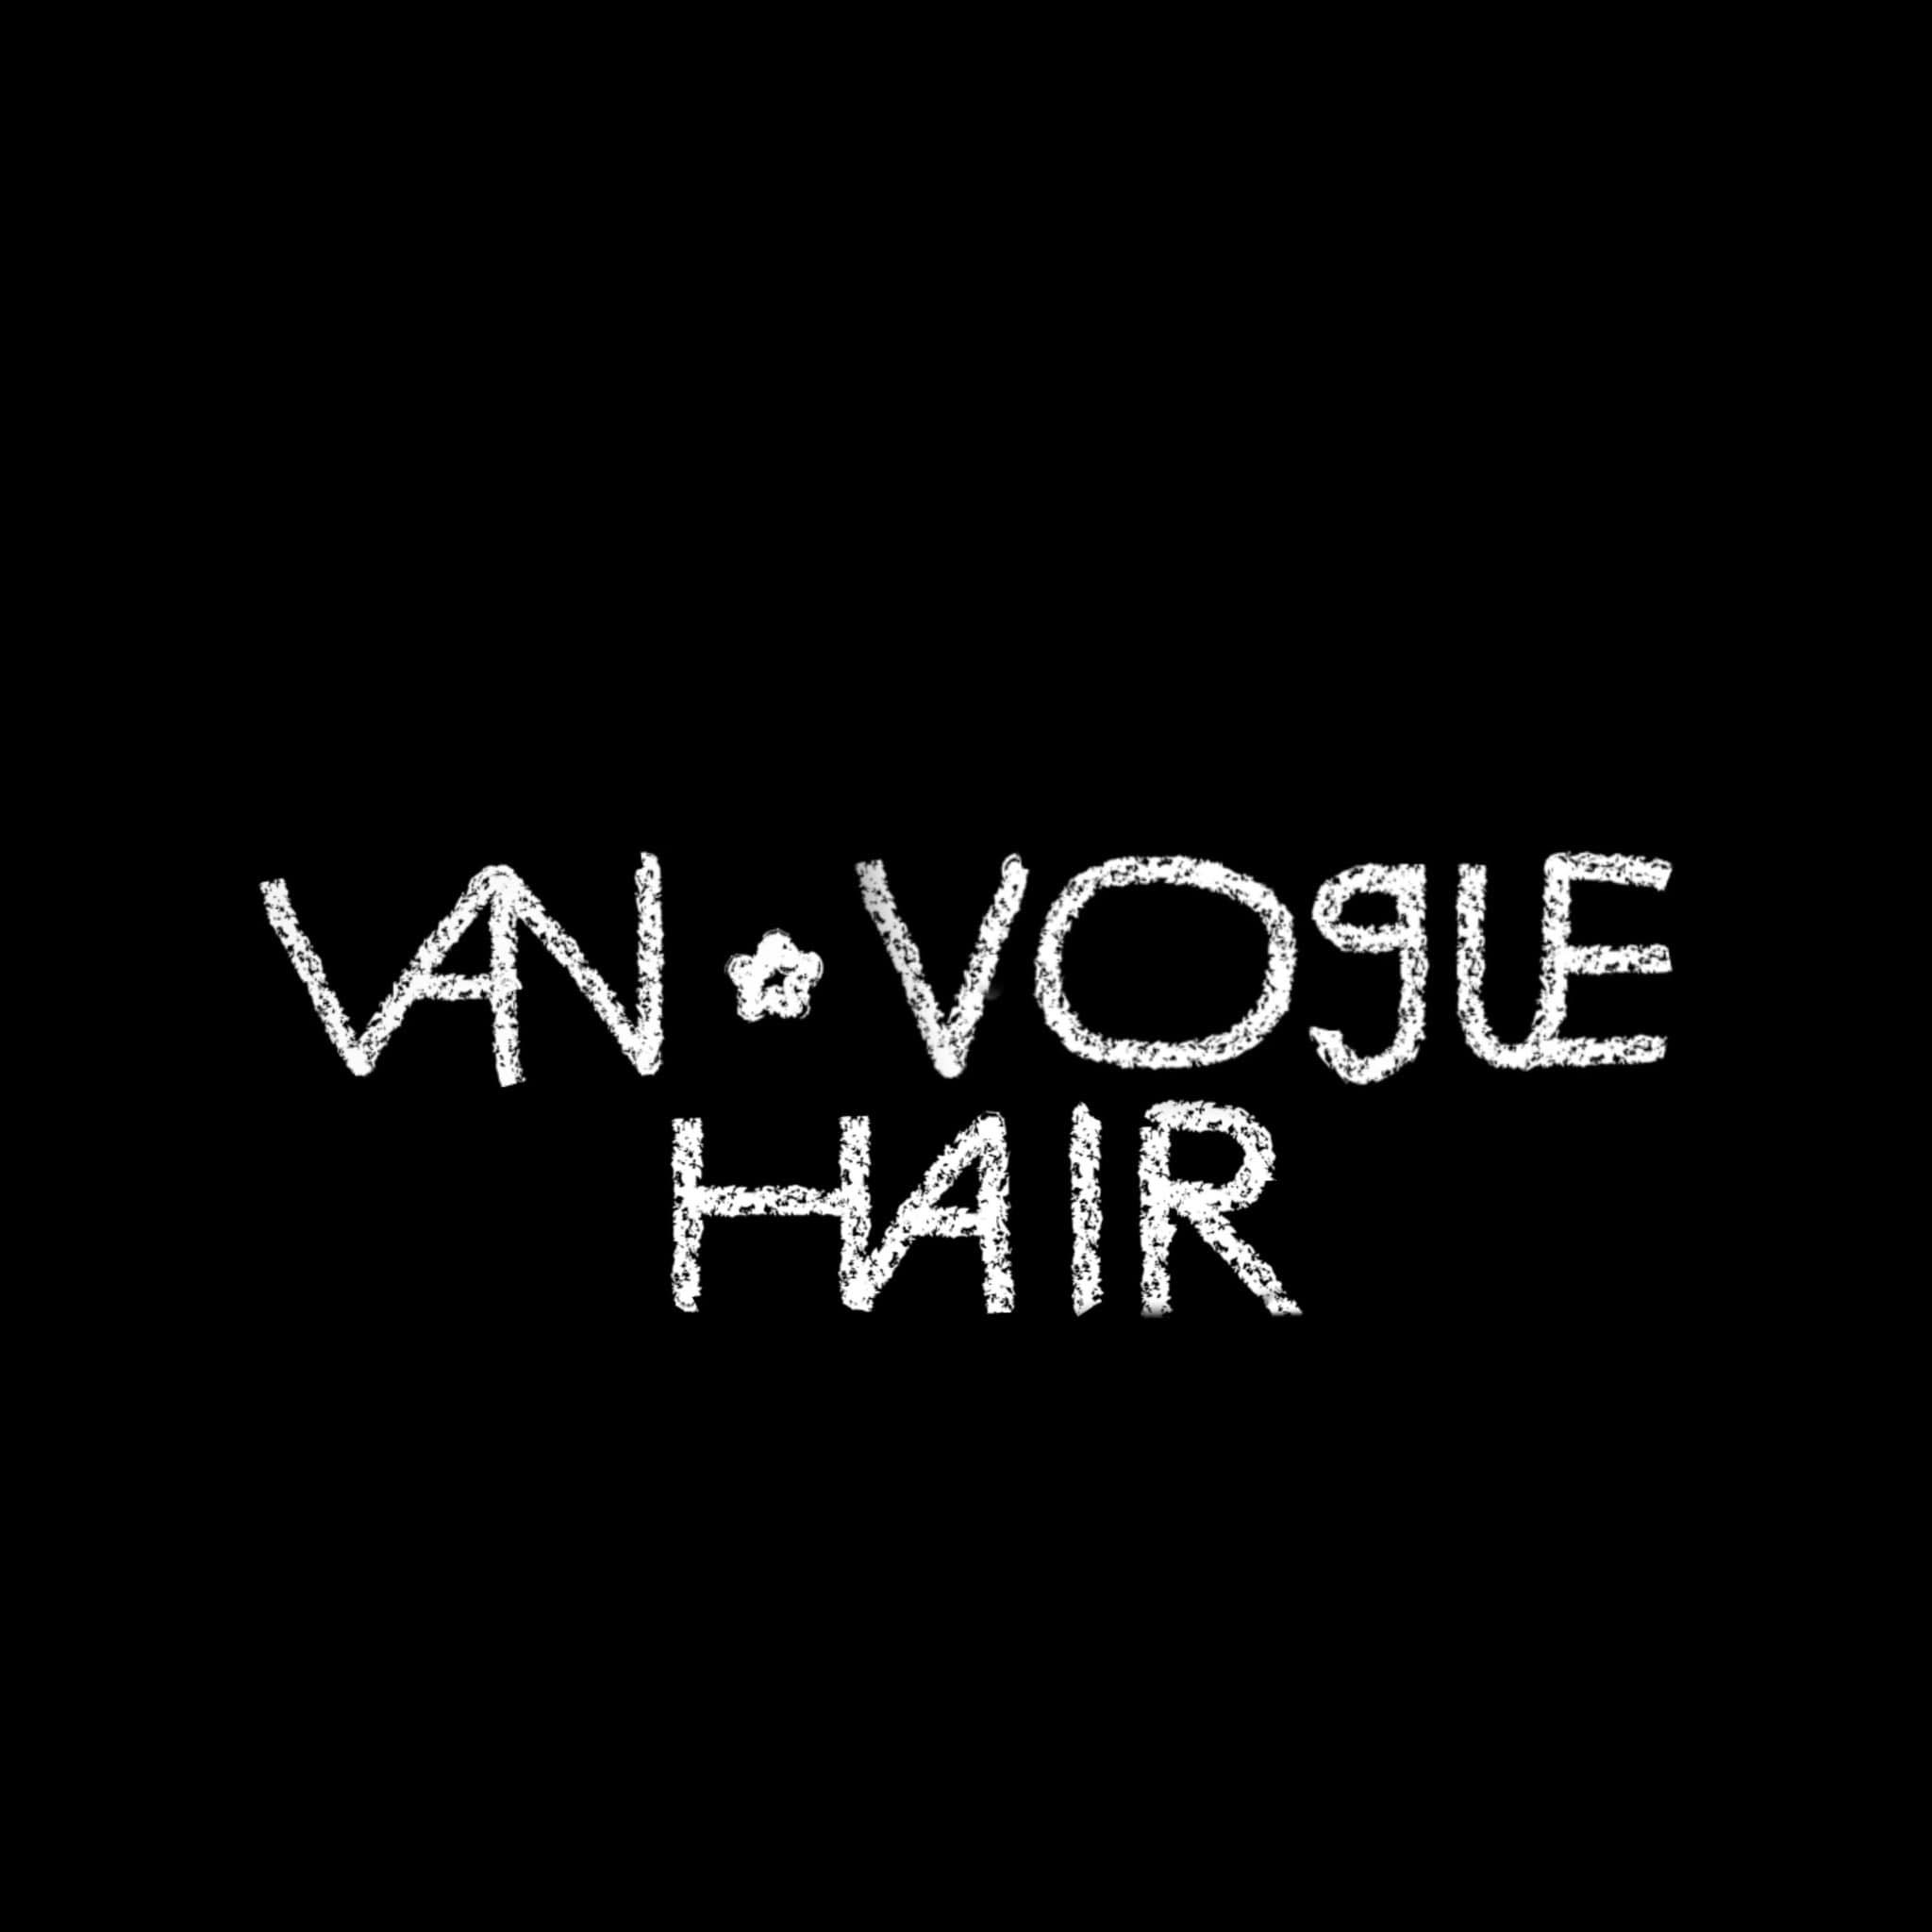 Van Vogue Hair - Culpeper Hair Salon